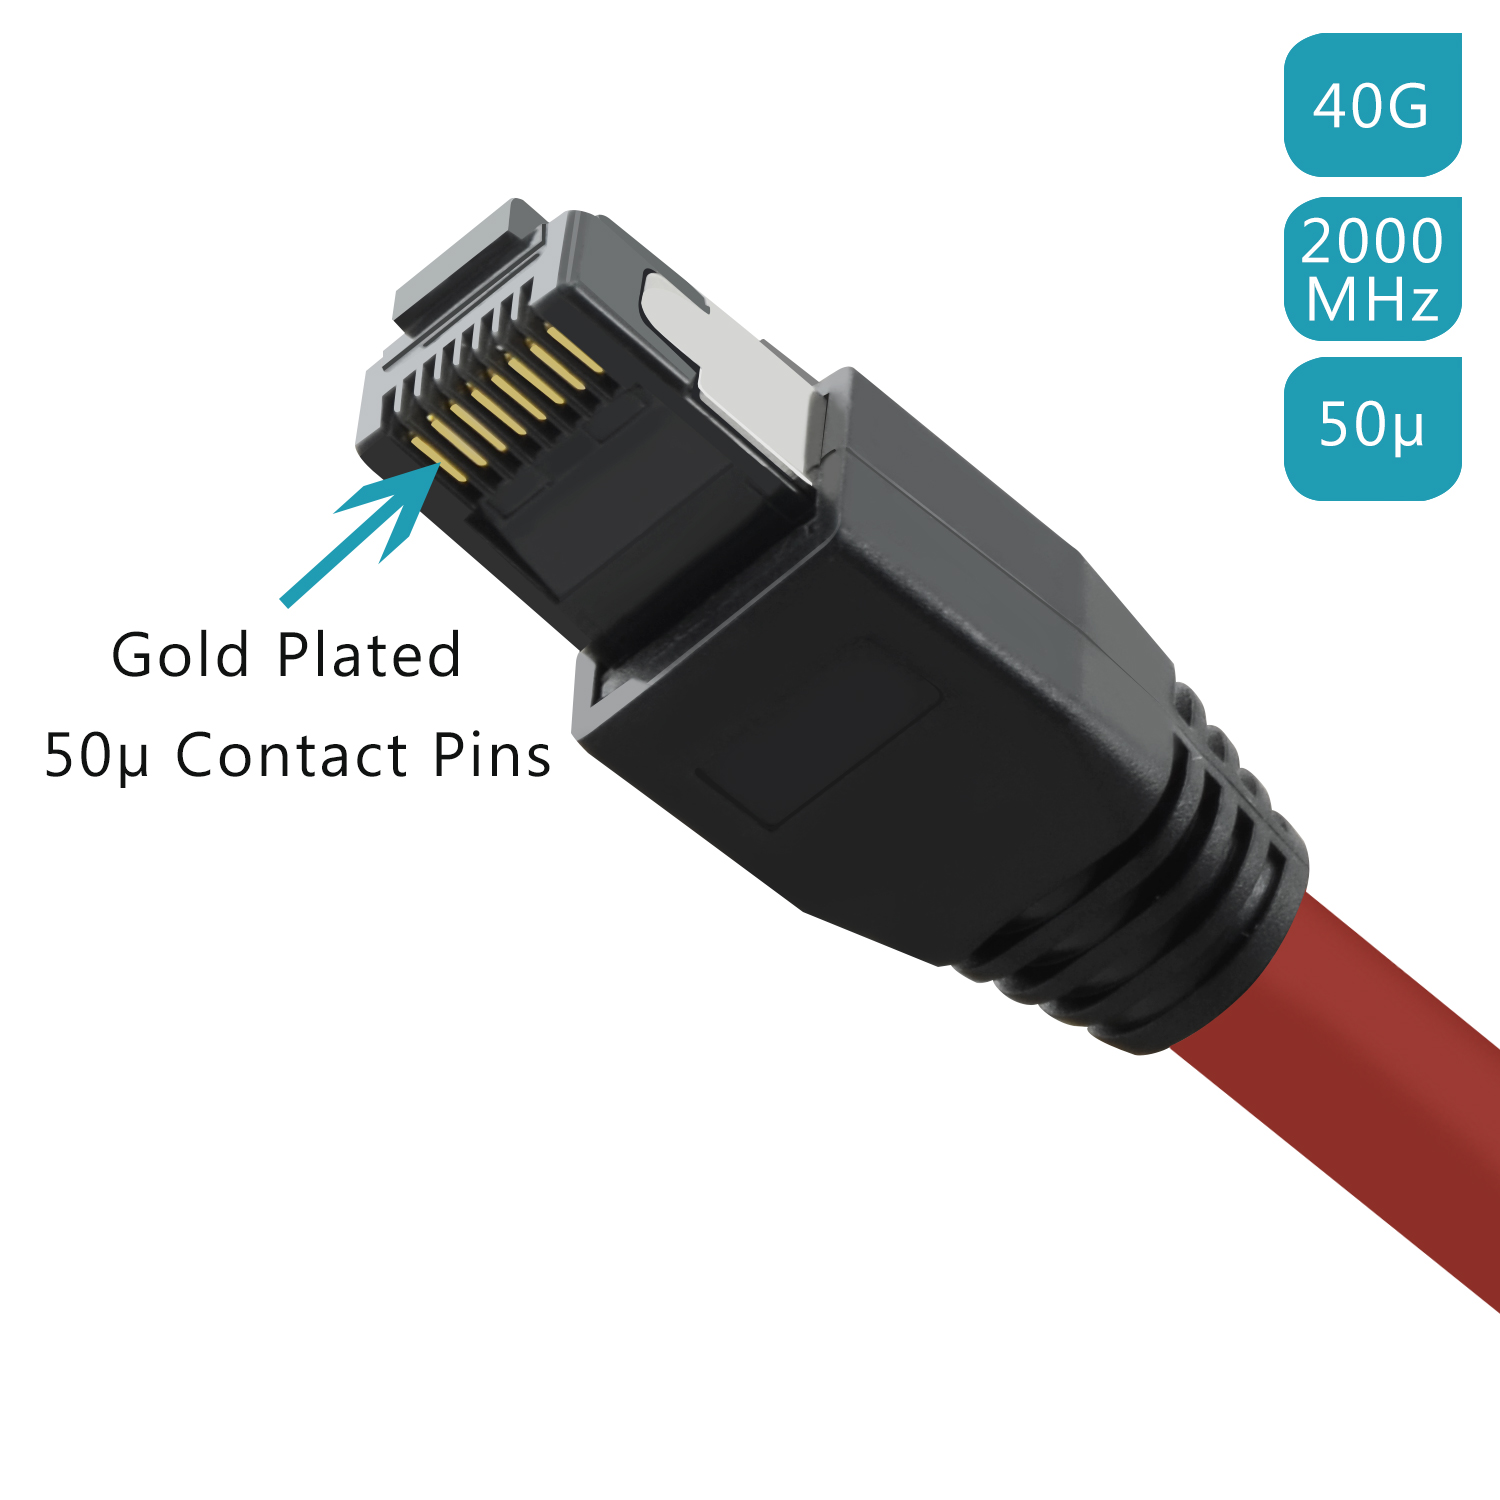 40 m Netzwerkkabel, rot, Netzwerkkabel S/FTP / 0,25 Patchkabel GBit, 0,25m TPFNET